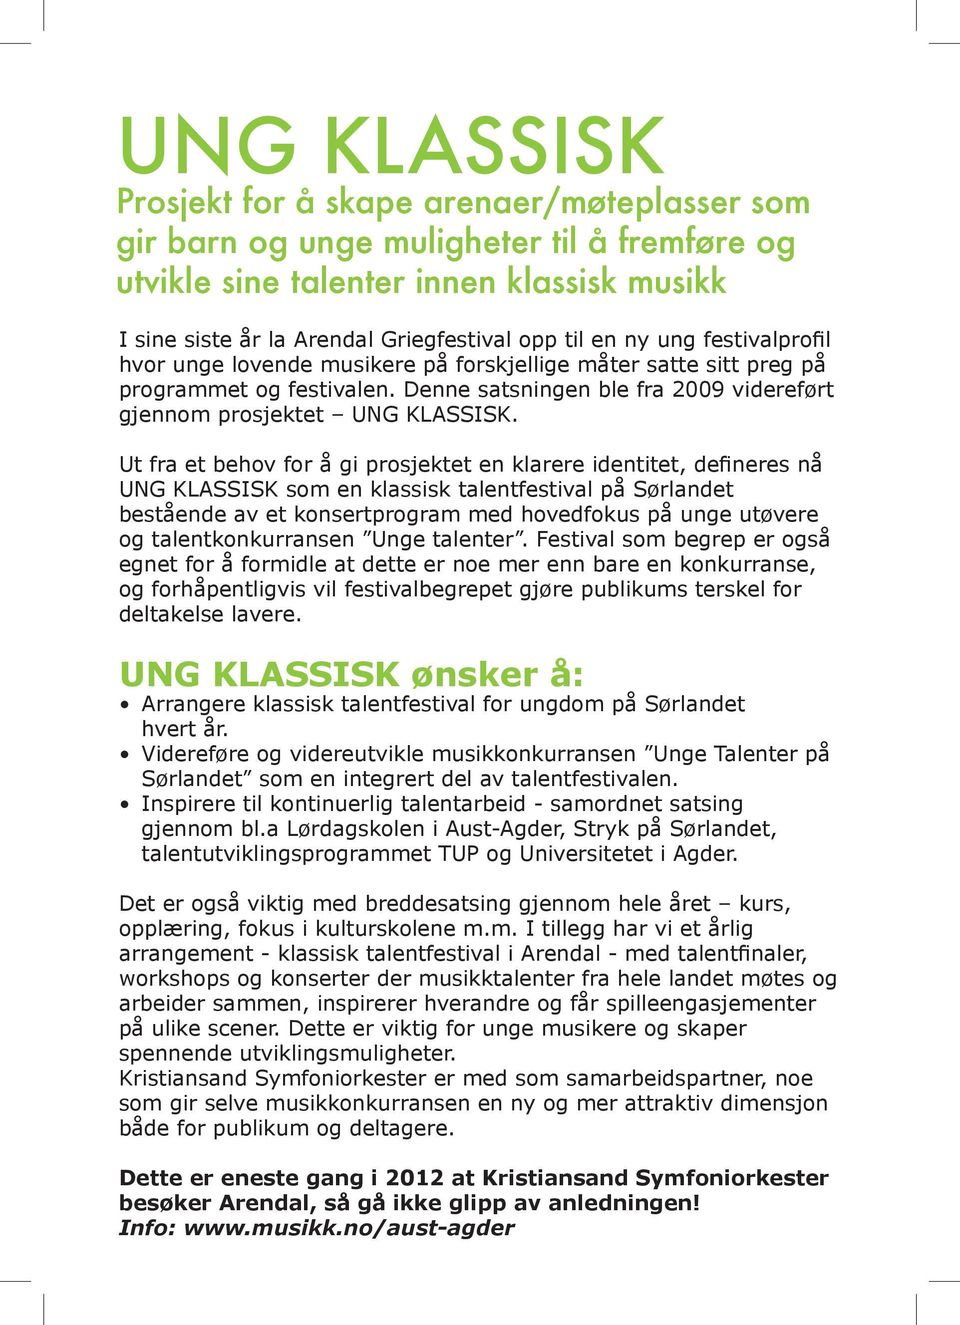 Ut fra et behov for å gi prosjektet en klarere identitet, defineres nå UNG KLASSISK som en klassisk talentfestival på Sørlandet bestående av et konsertprogram med hovedfokus på unge utøvere og